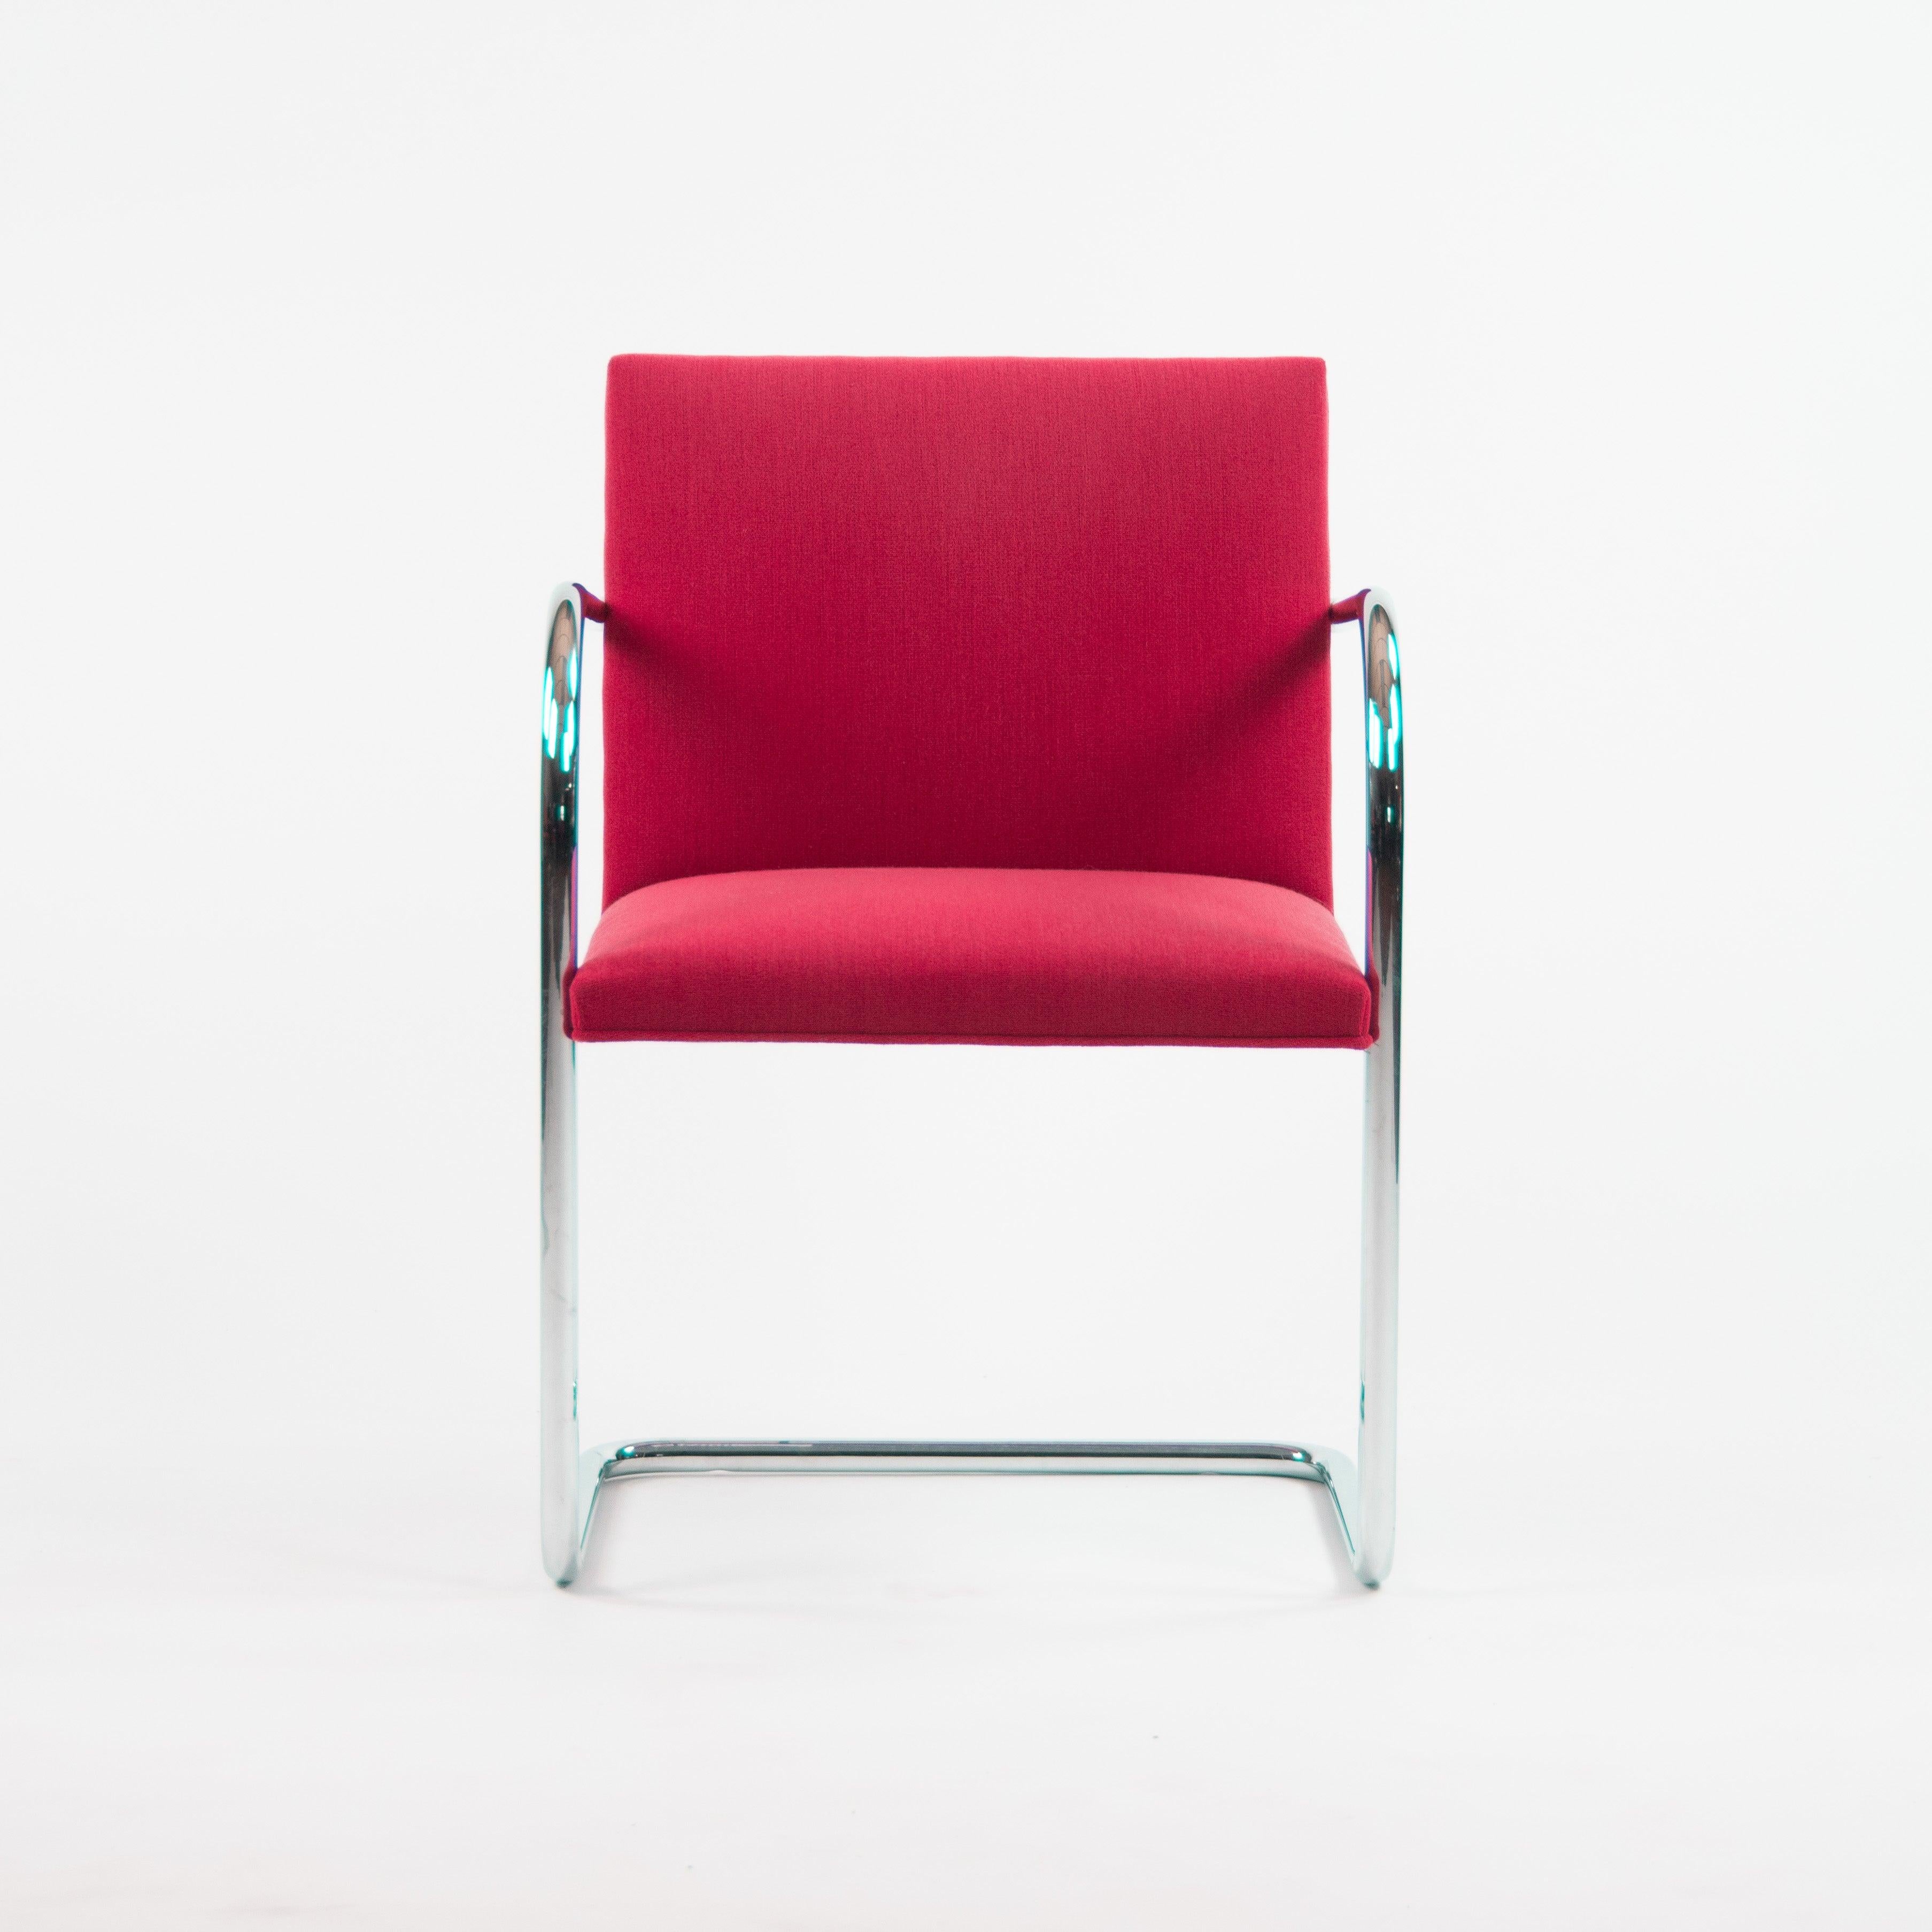 Labellisée Mies Van Der Rohe Brno, cette chaise est en tissu rouge avec une belle structure en acier tubulaire chromé.


Les chaises ont été fabriquées entre le milieu des années 2000 et le début des années 2010 et provenaient directement du siège